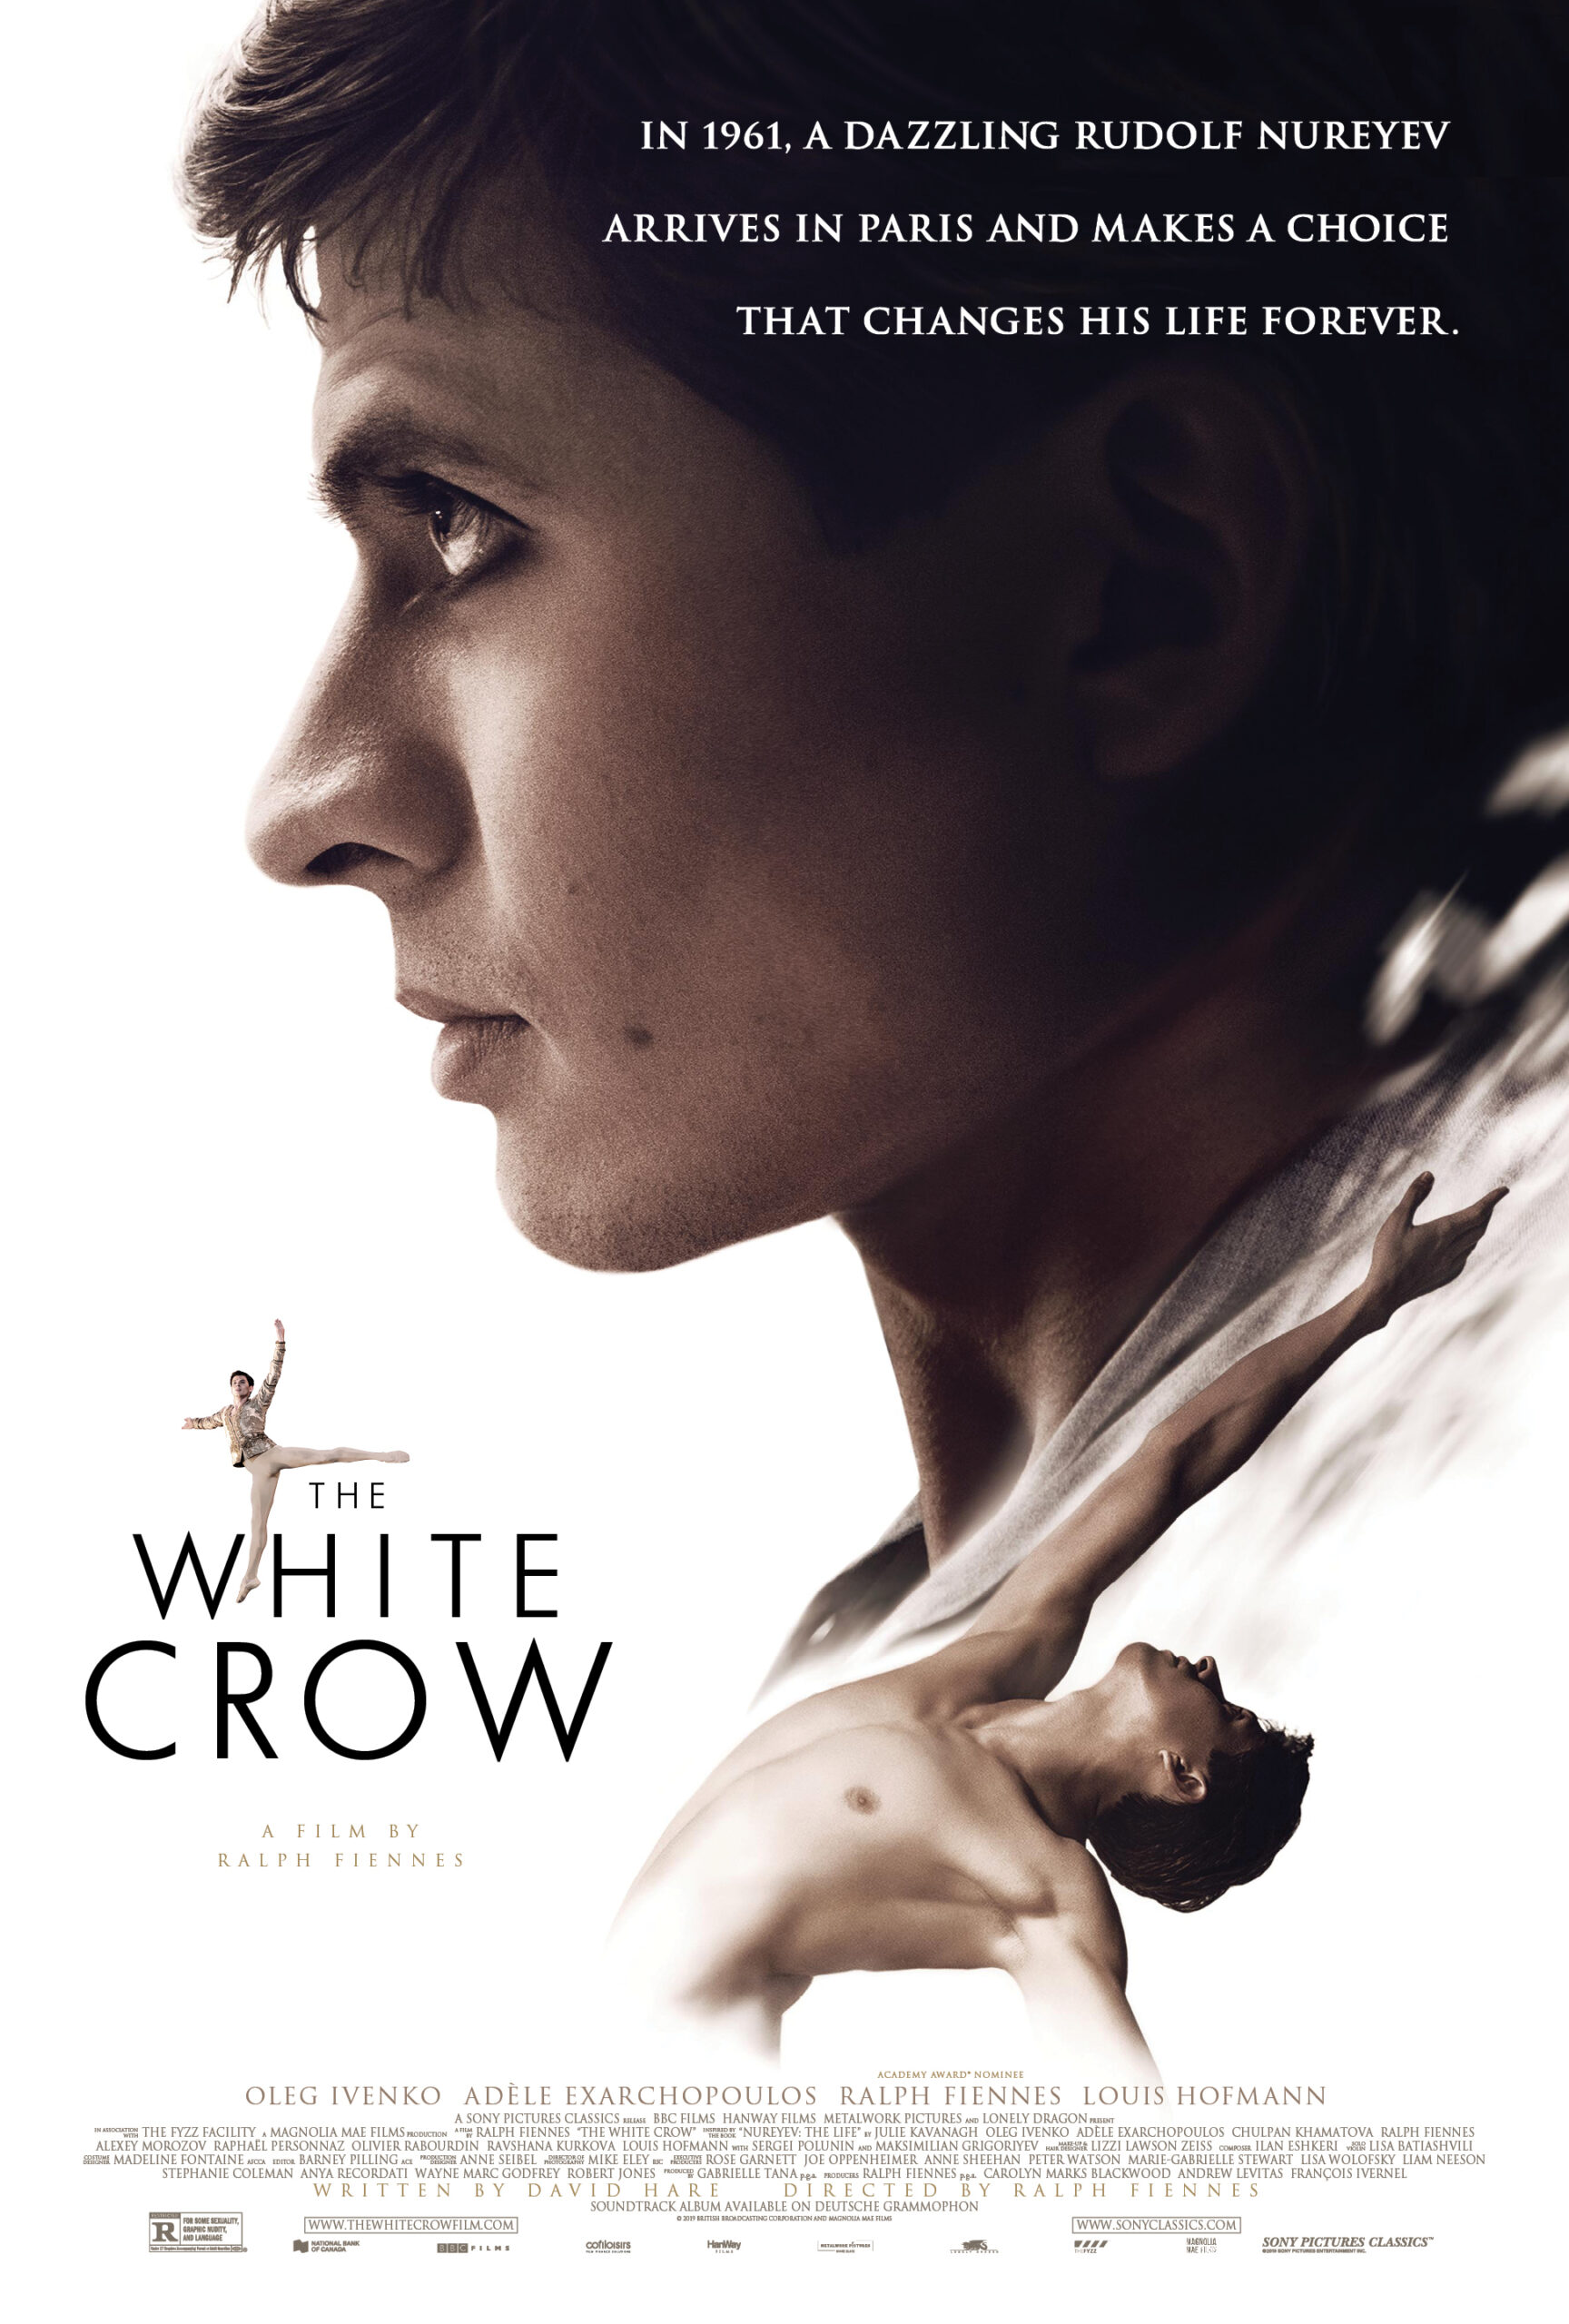 ดูหนังออนไลน์ฟรี The White Crow (2018) เต้นเพื่อฝัน วันอิสระภาพ